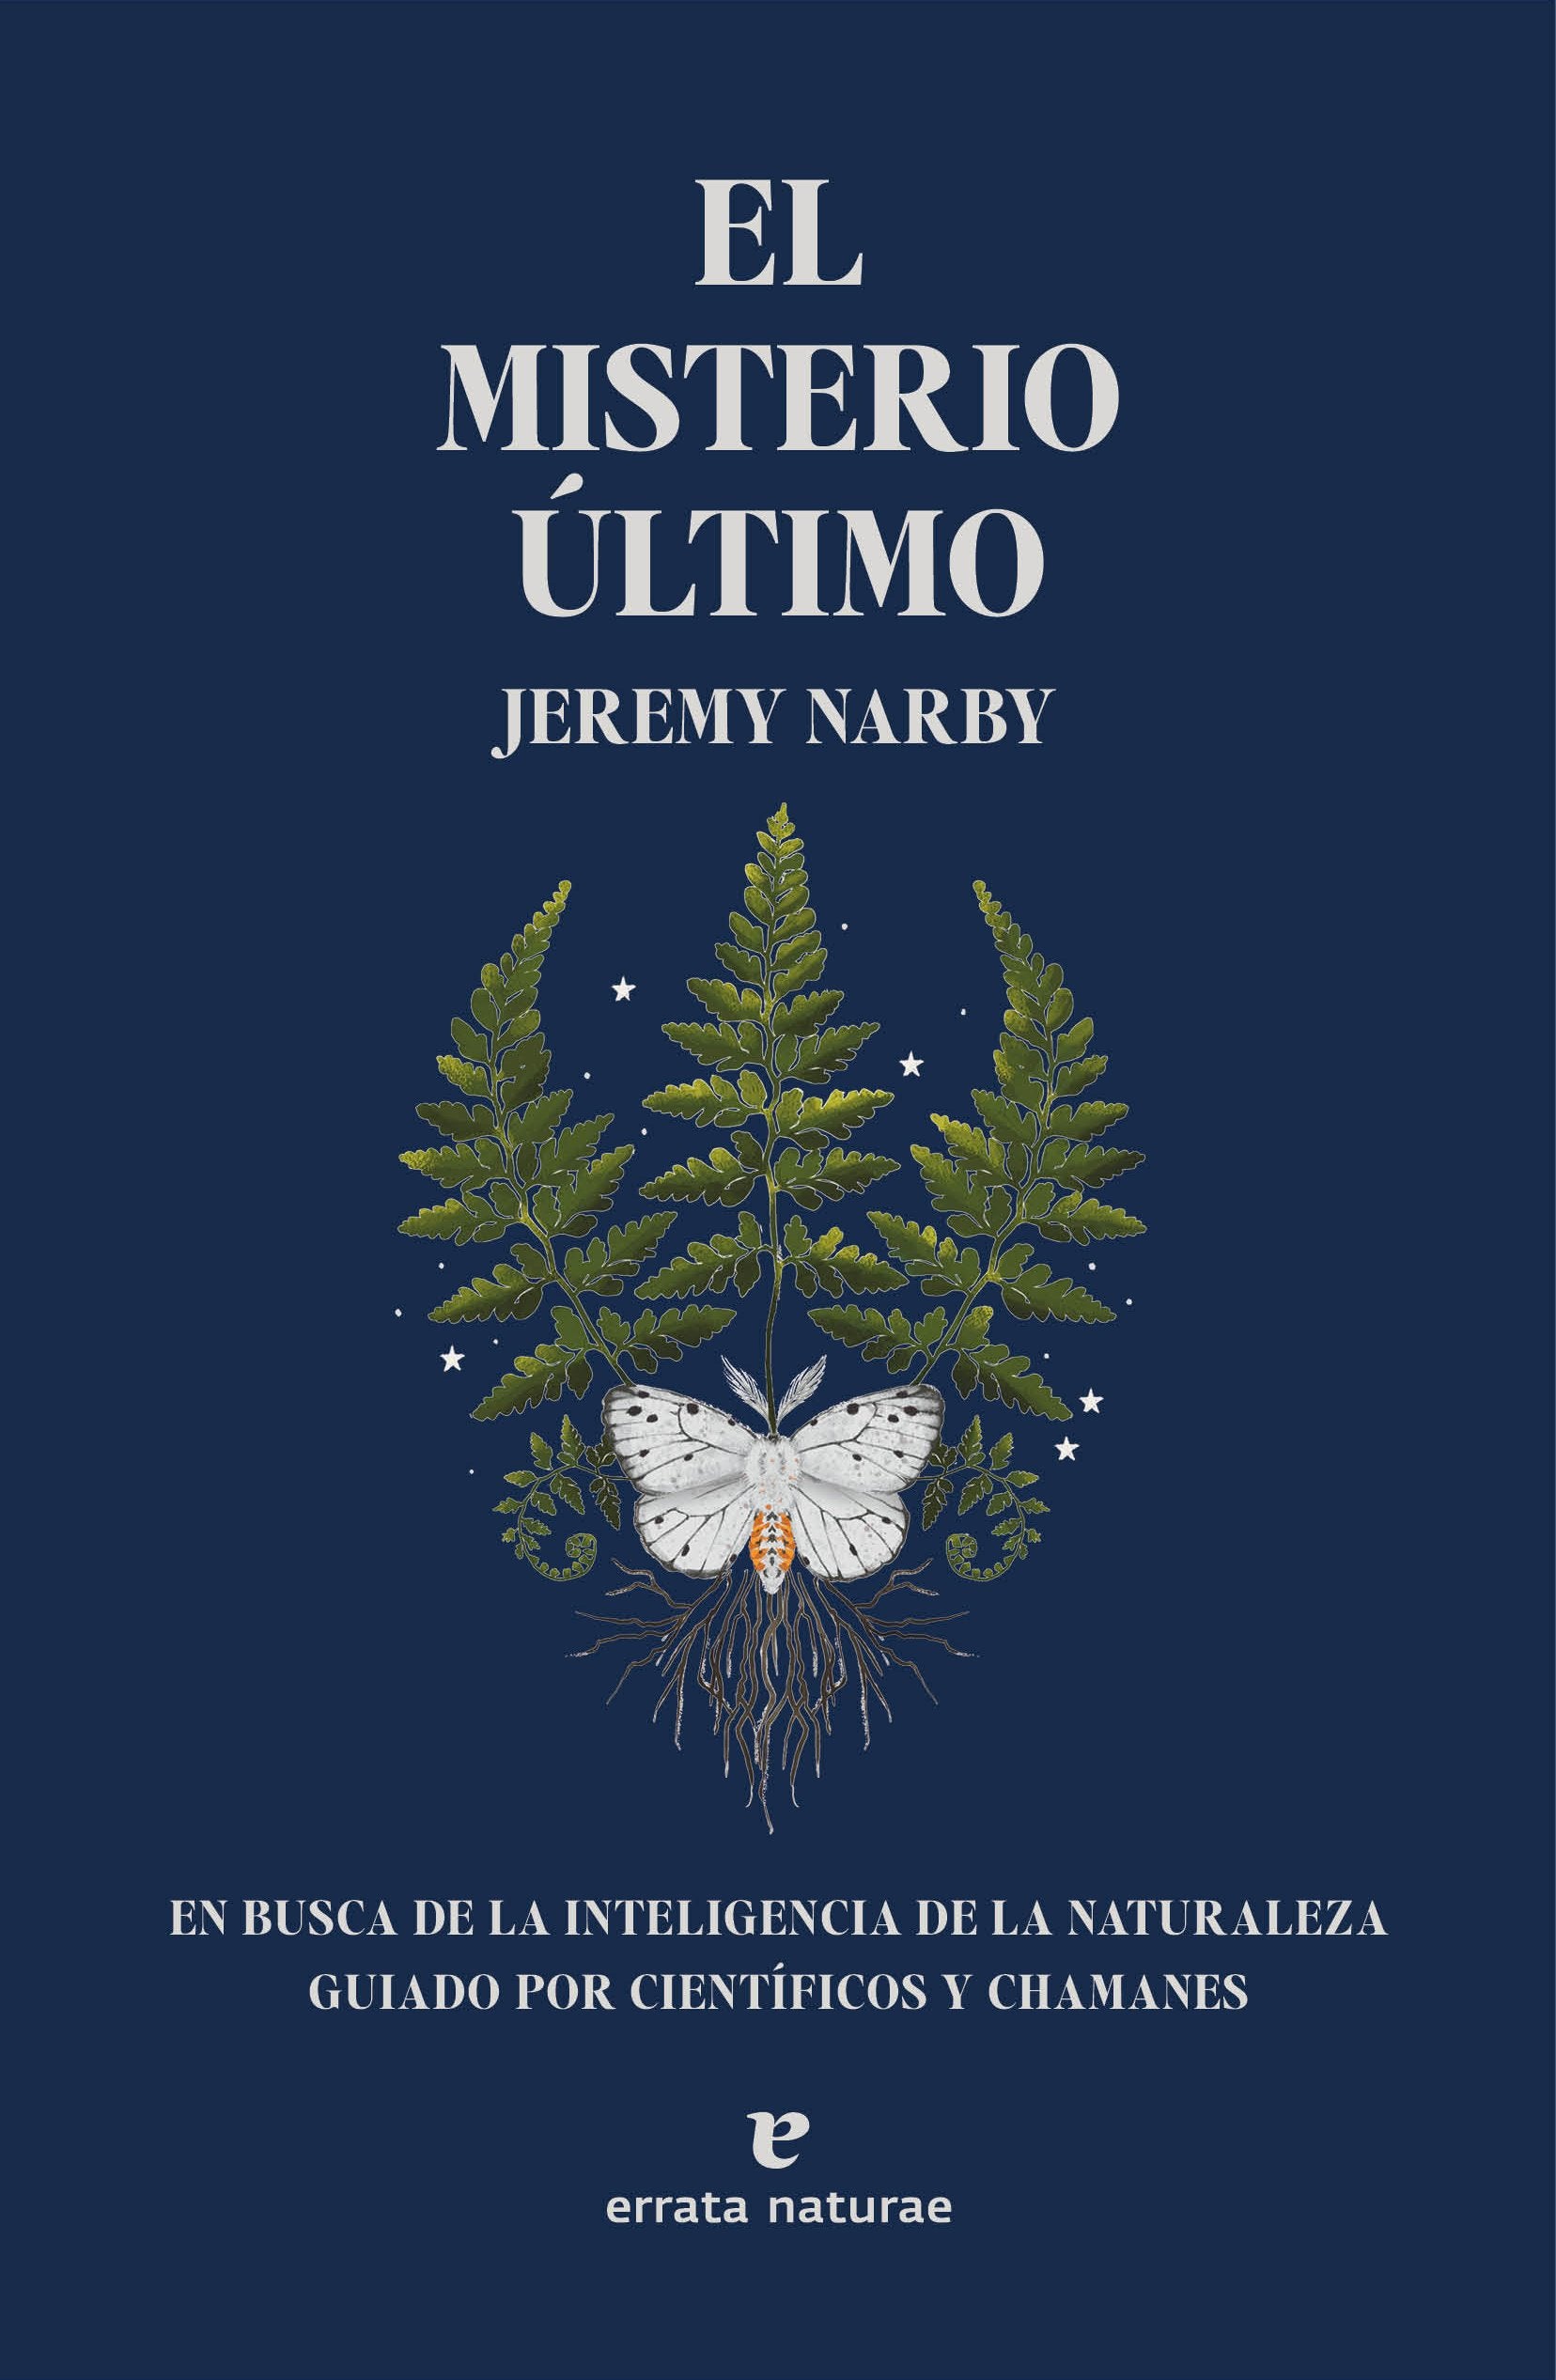 Le mystère ultime - Jeremy Narby